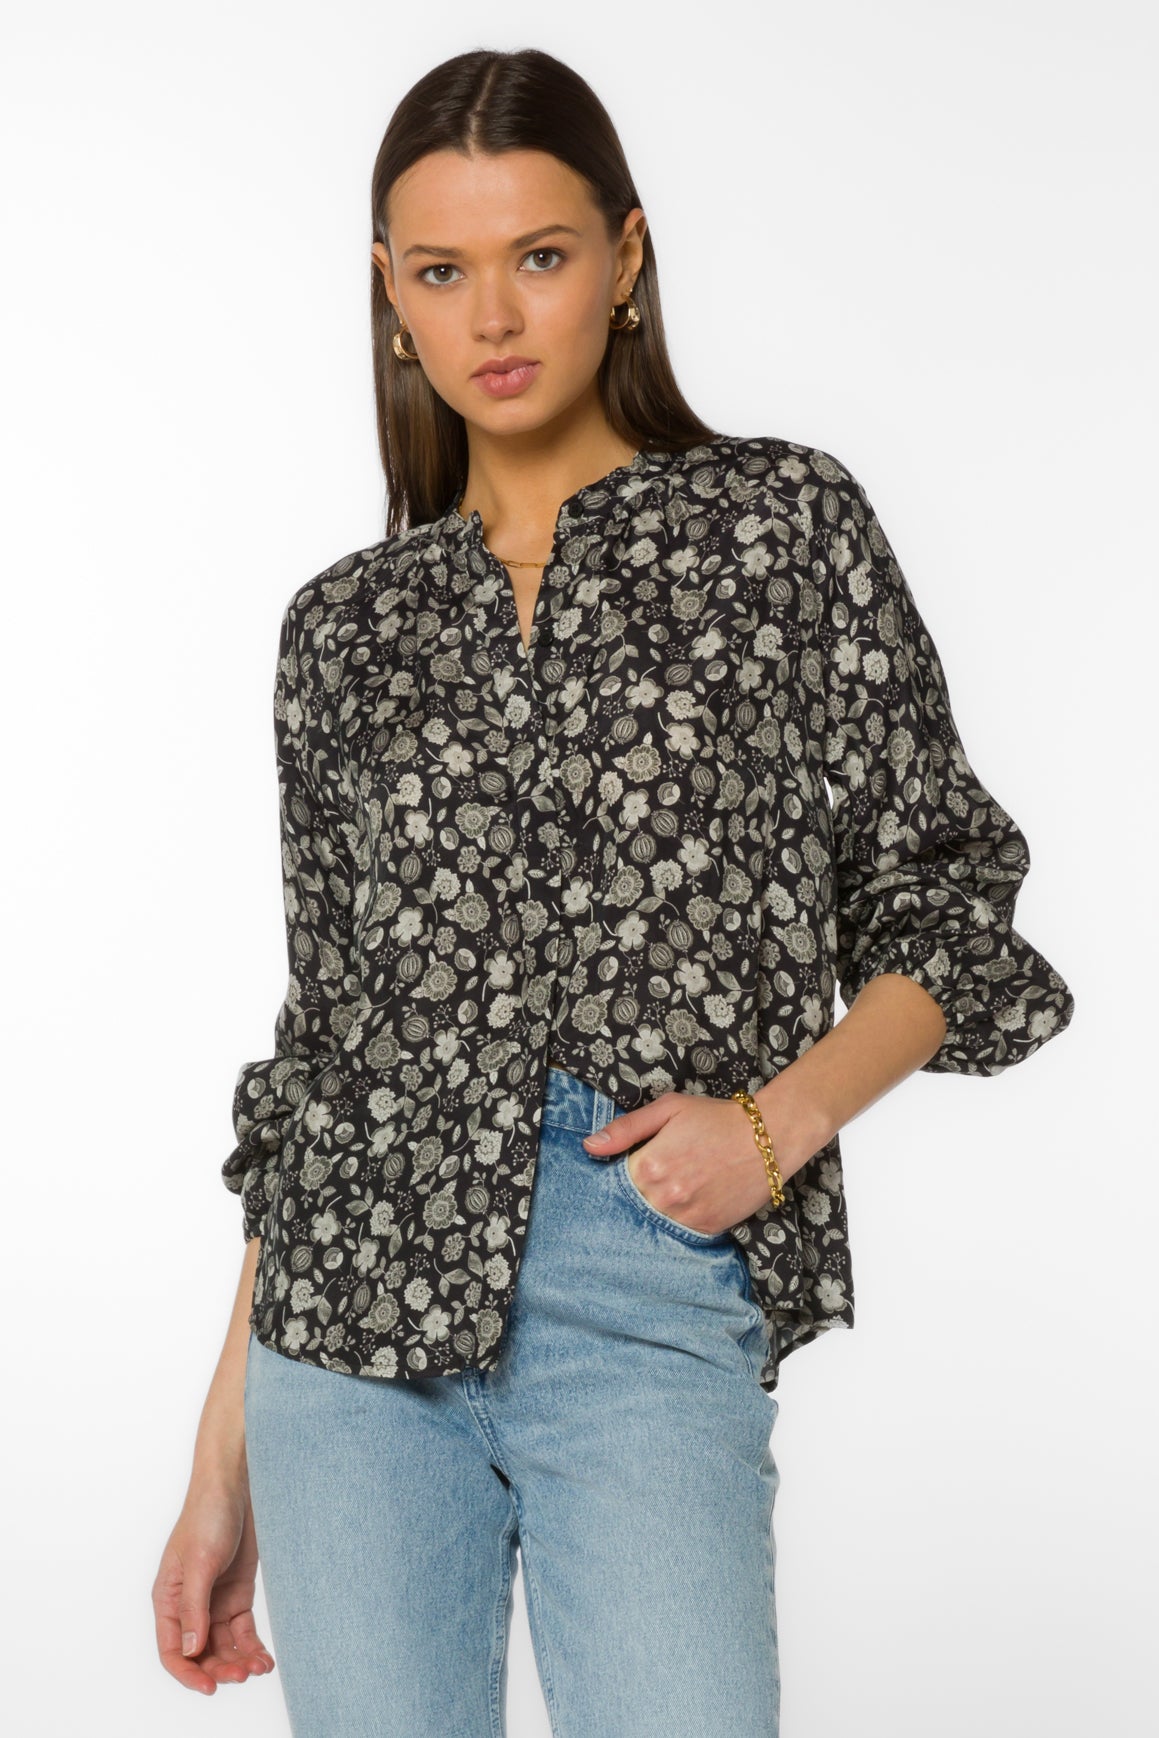 Saya Black Floral Shirt - Tops - Velvet Heart Clothing